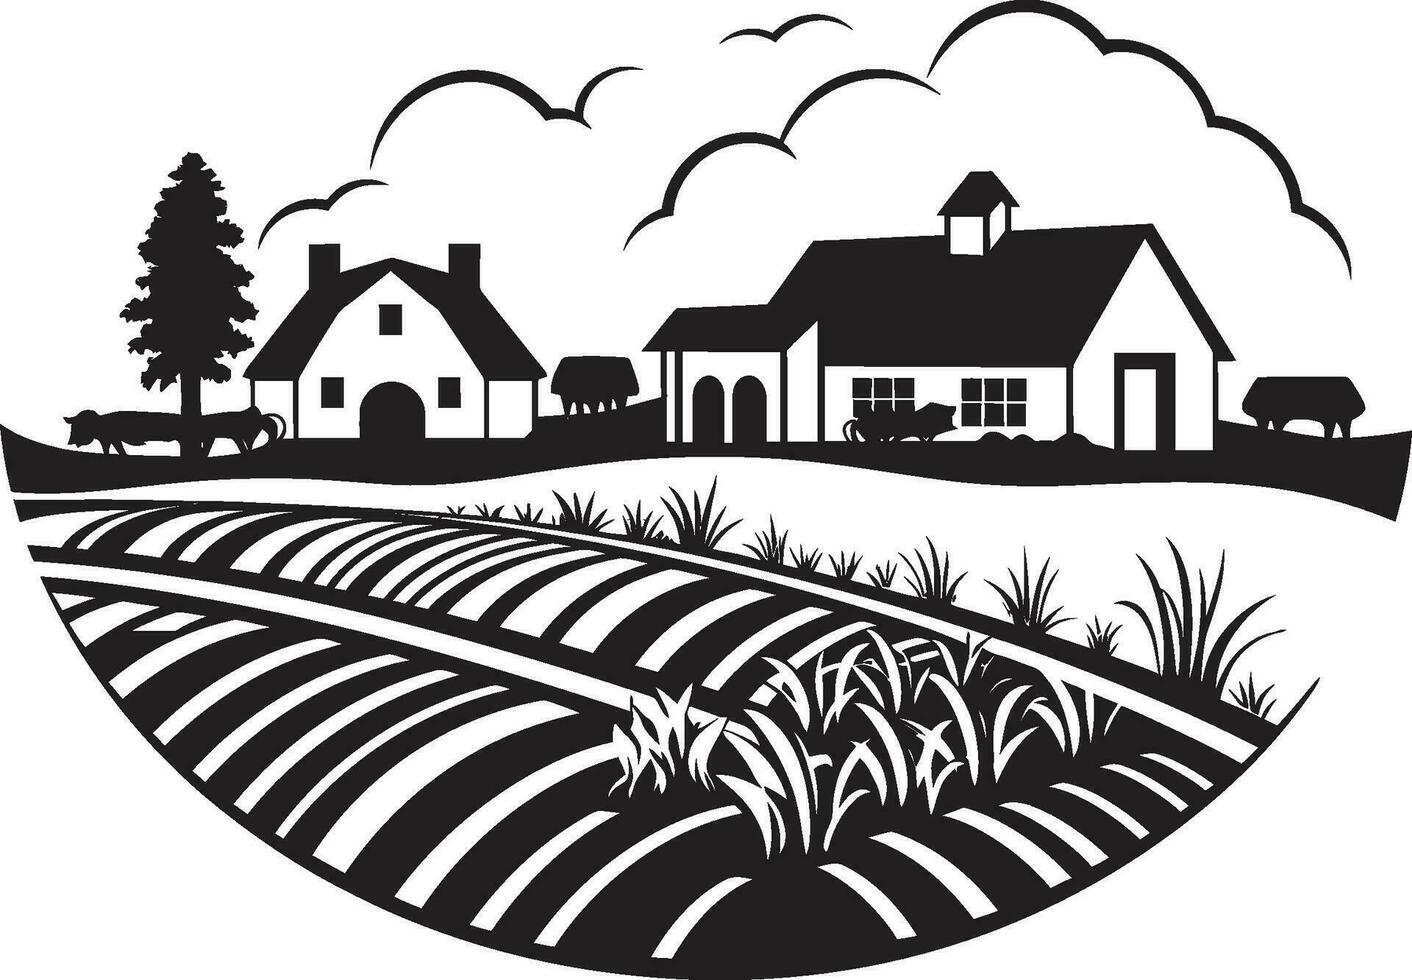 récolte sérénité agricole ferme icône conception rural battre en retraite noir logo icône pour agriculture vecteur